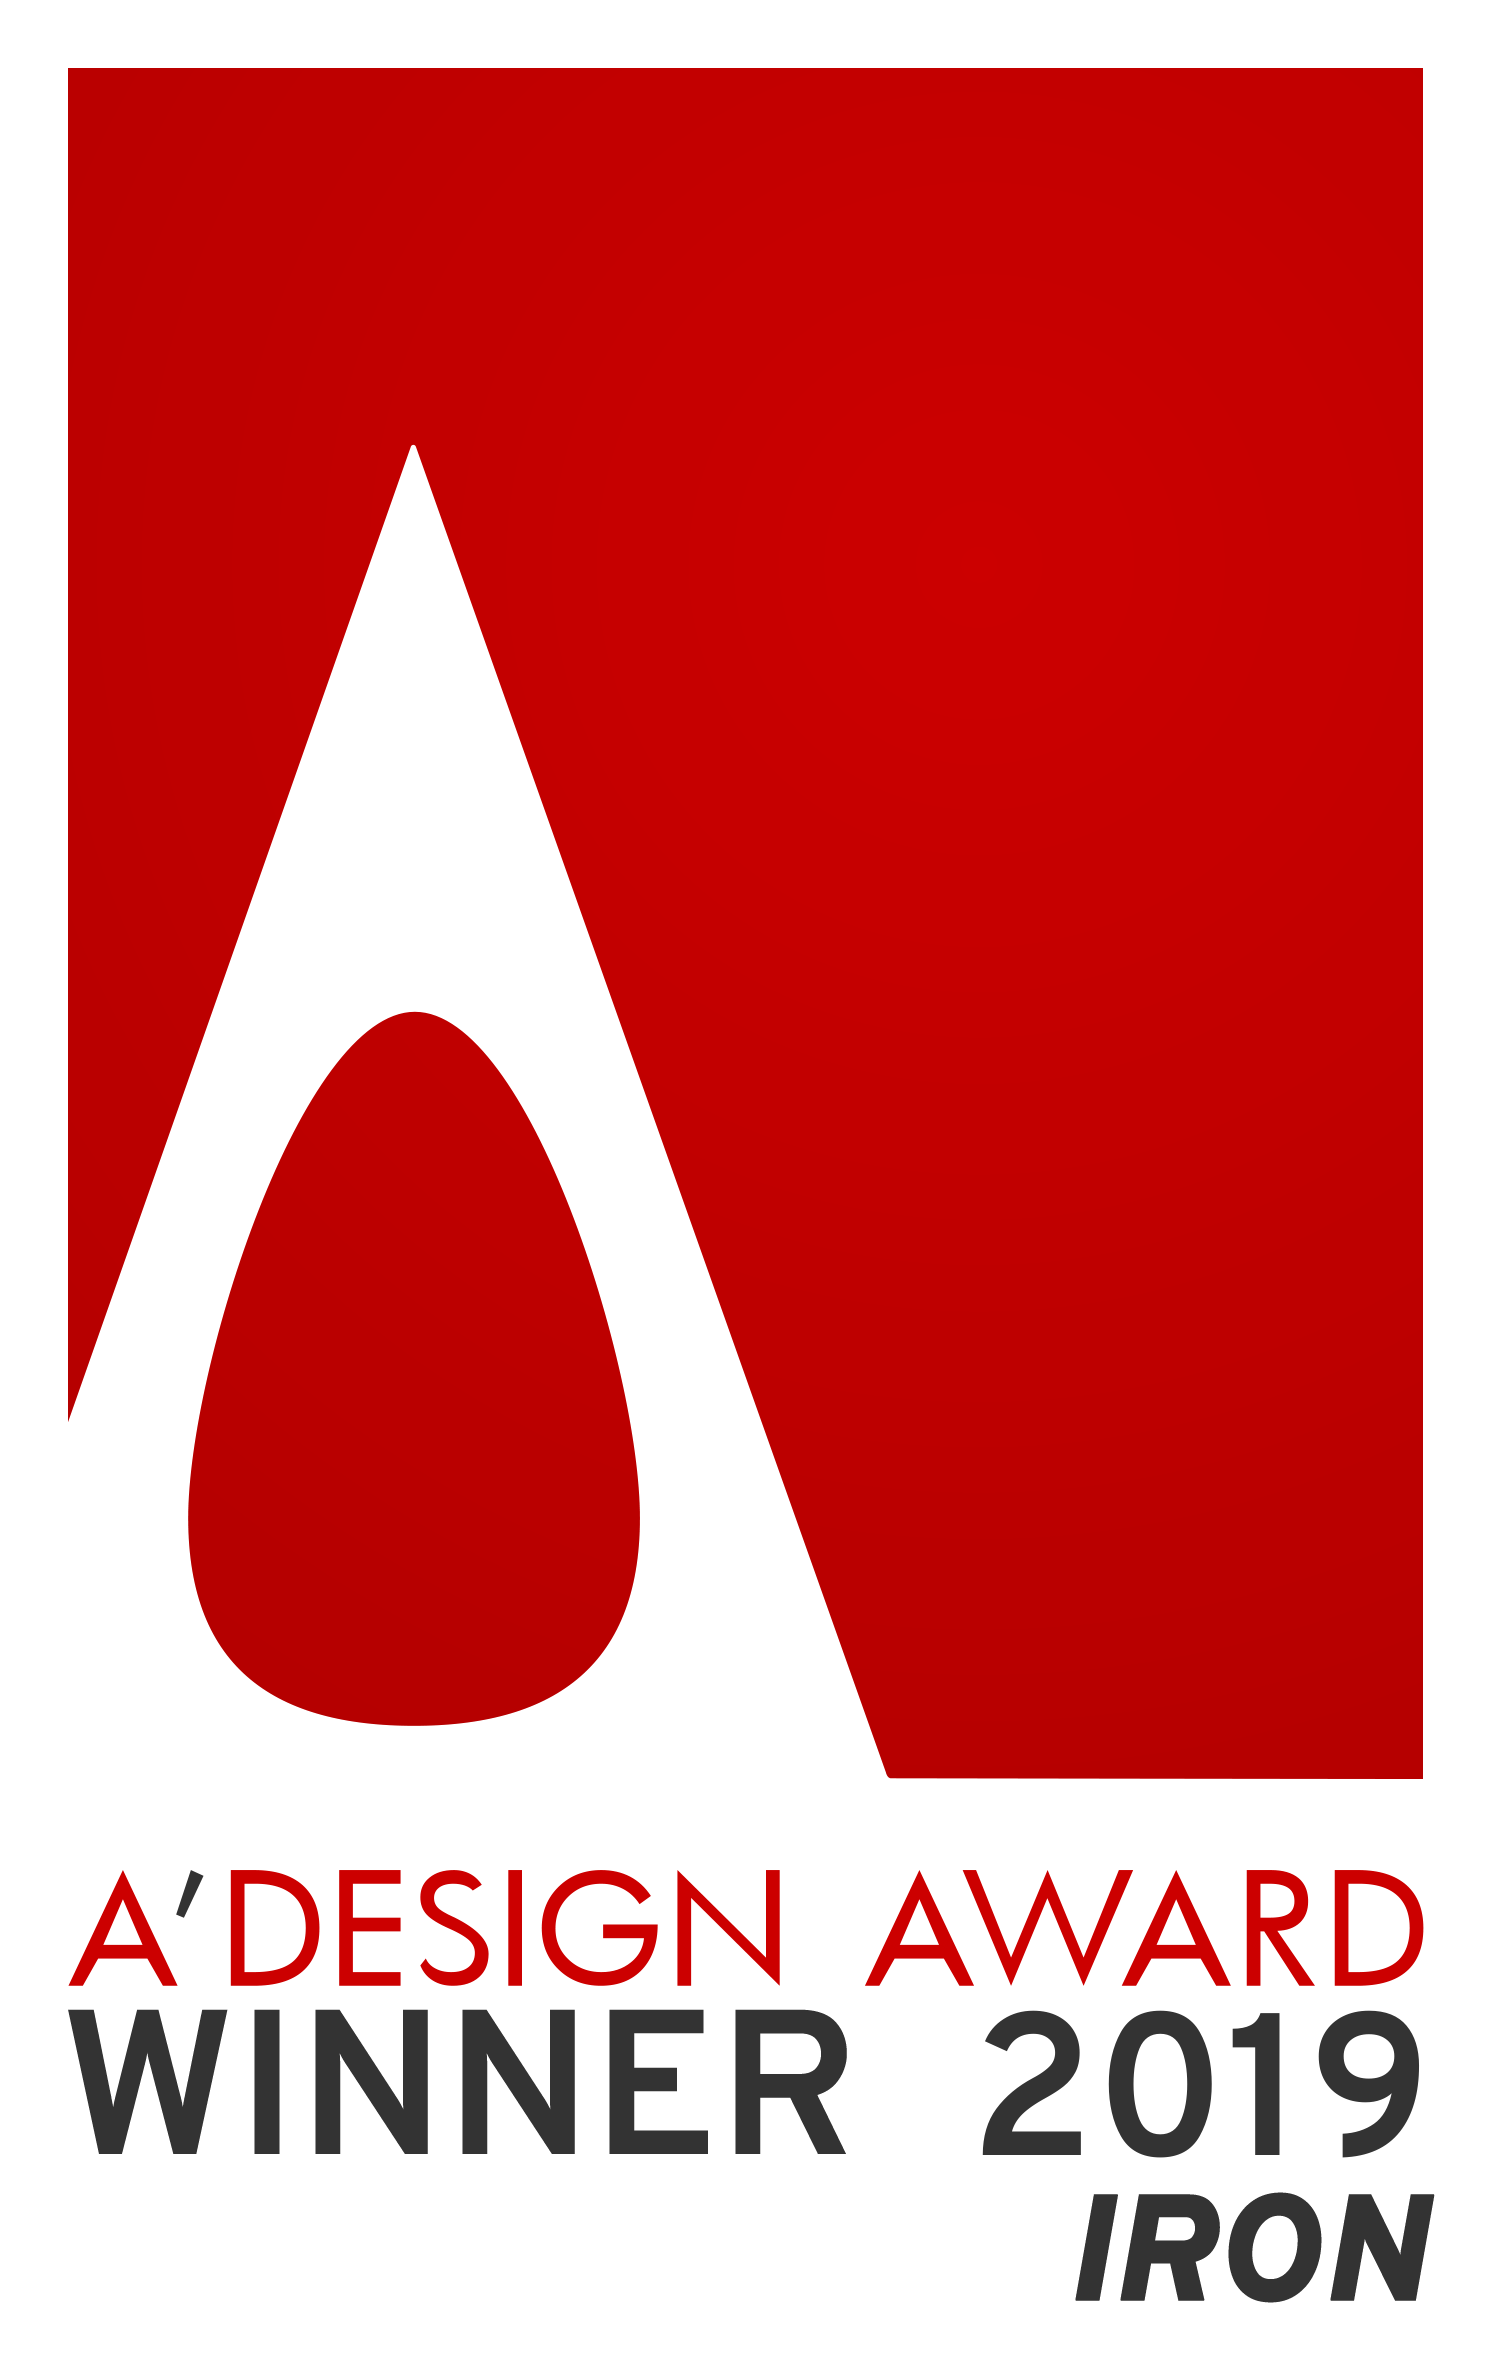 A'Design Award 2019 Iron